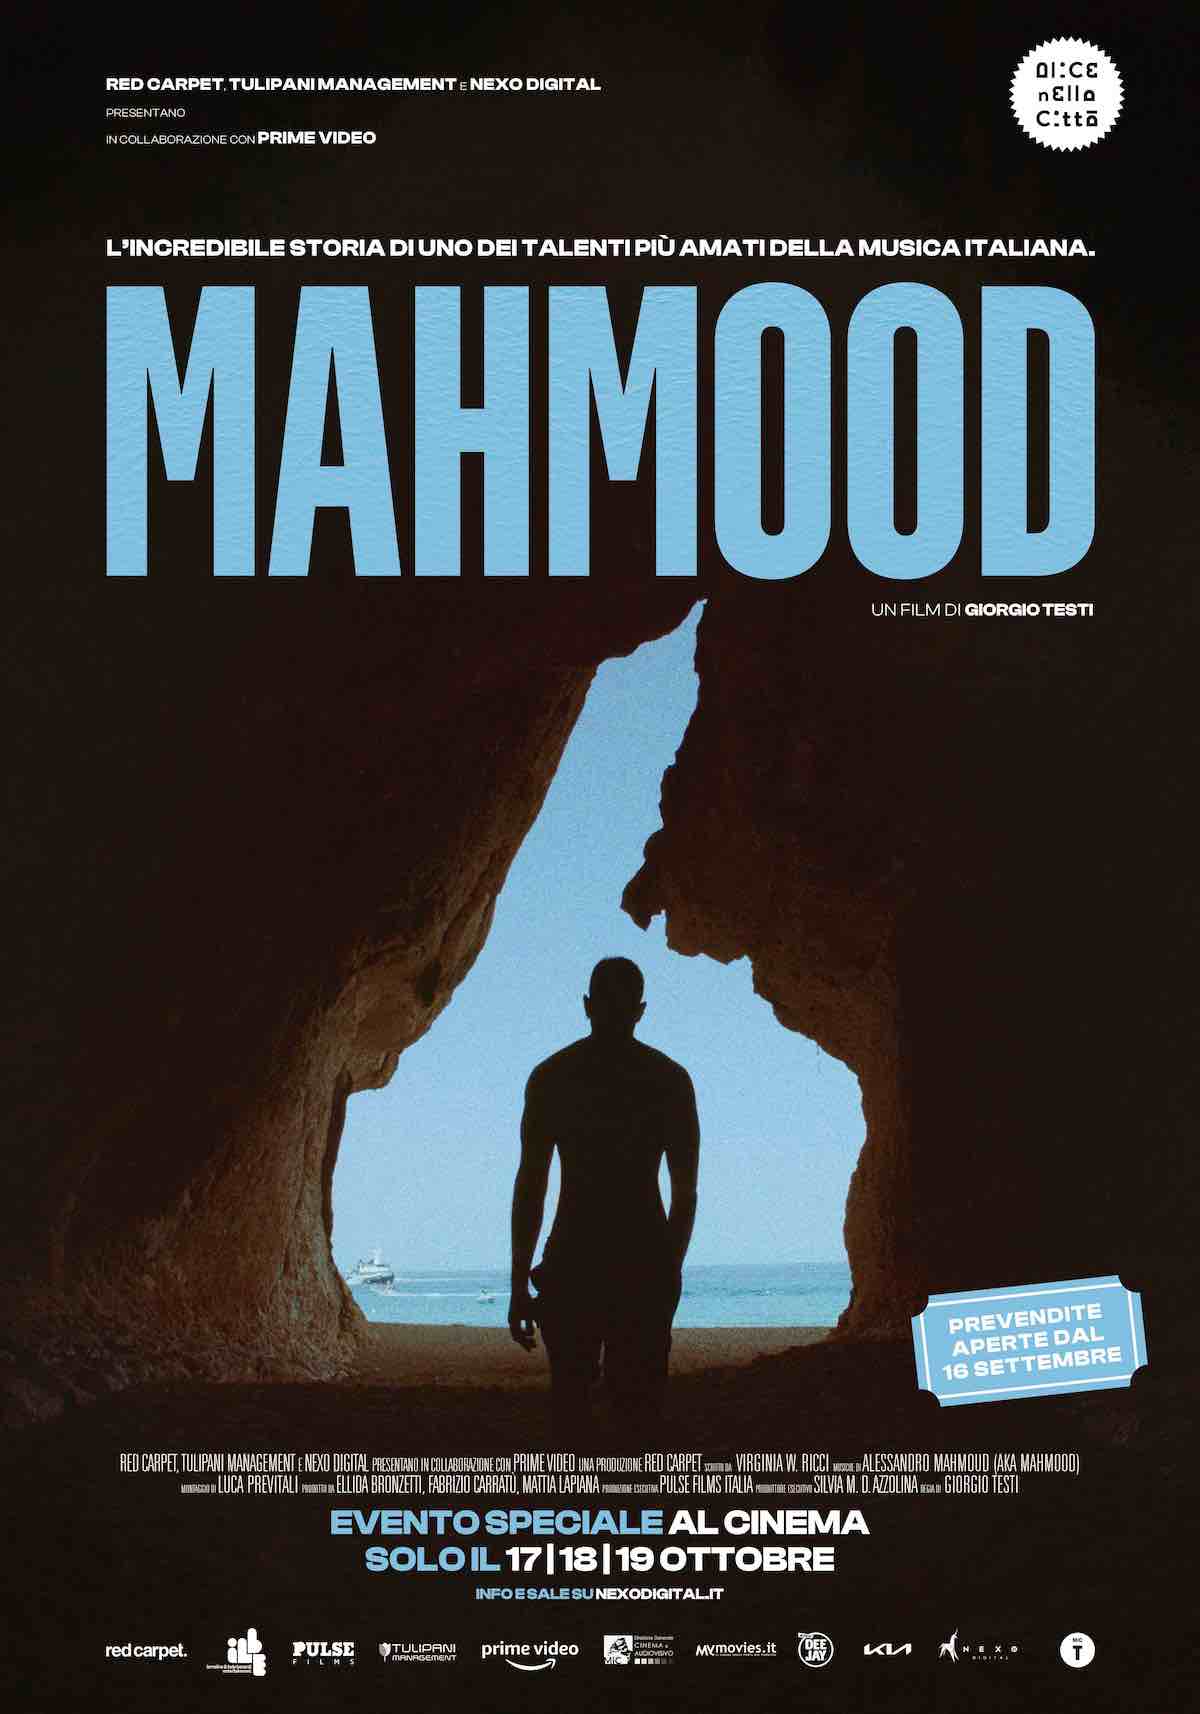 Mahmood, il docufilm in anteprima ad Alice nella Città e al cinema dal 17 al 19 ottobre - trailer e poster - Mahmood poster docufilm - Gay.it